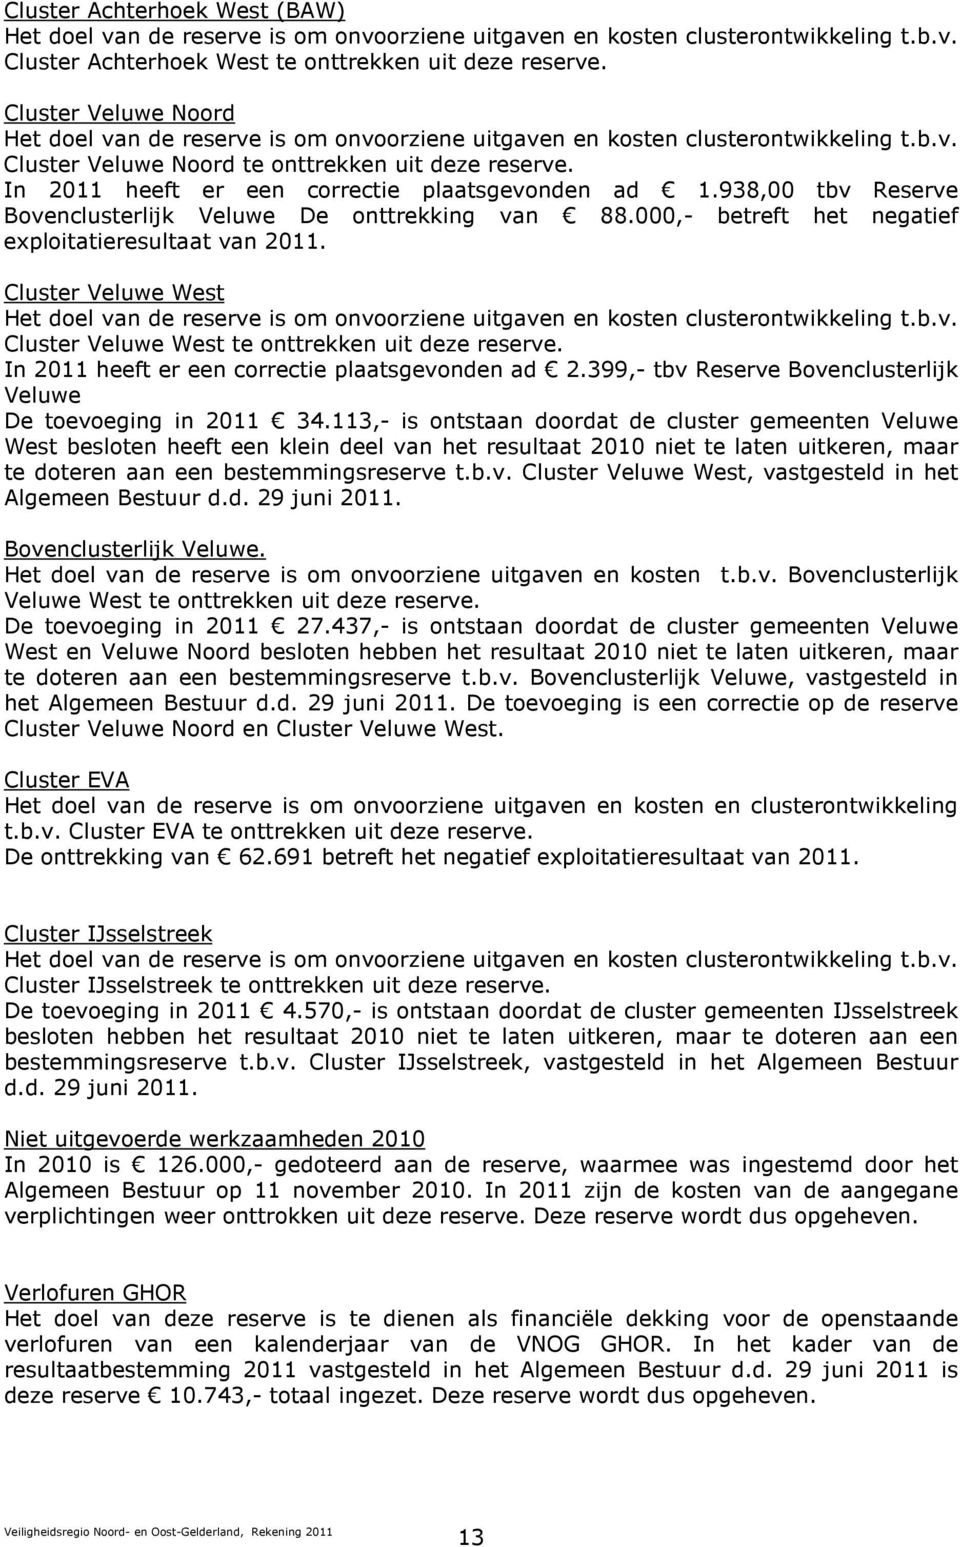 In 2011 heeft er een correctie plaatsgevonden ad 1.938,00 tbv Reserve Bovenclusterlijk Veluwe De onttrekking van 88.000,- betreft het negatief exploitatieresultaat van 2011.